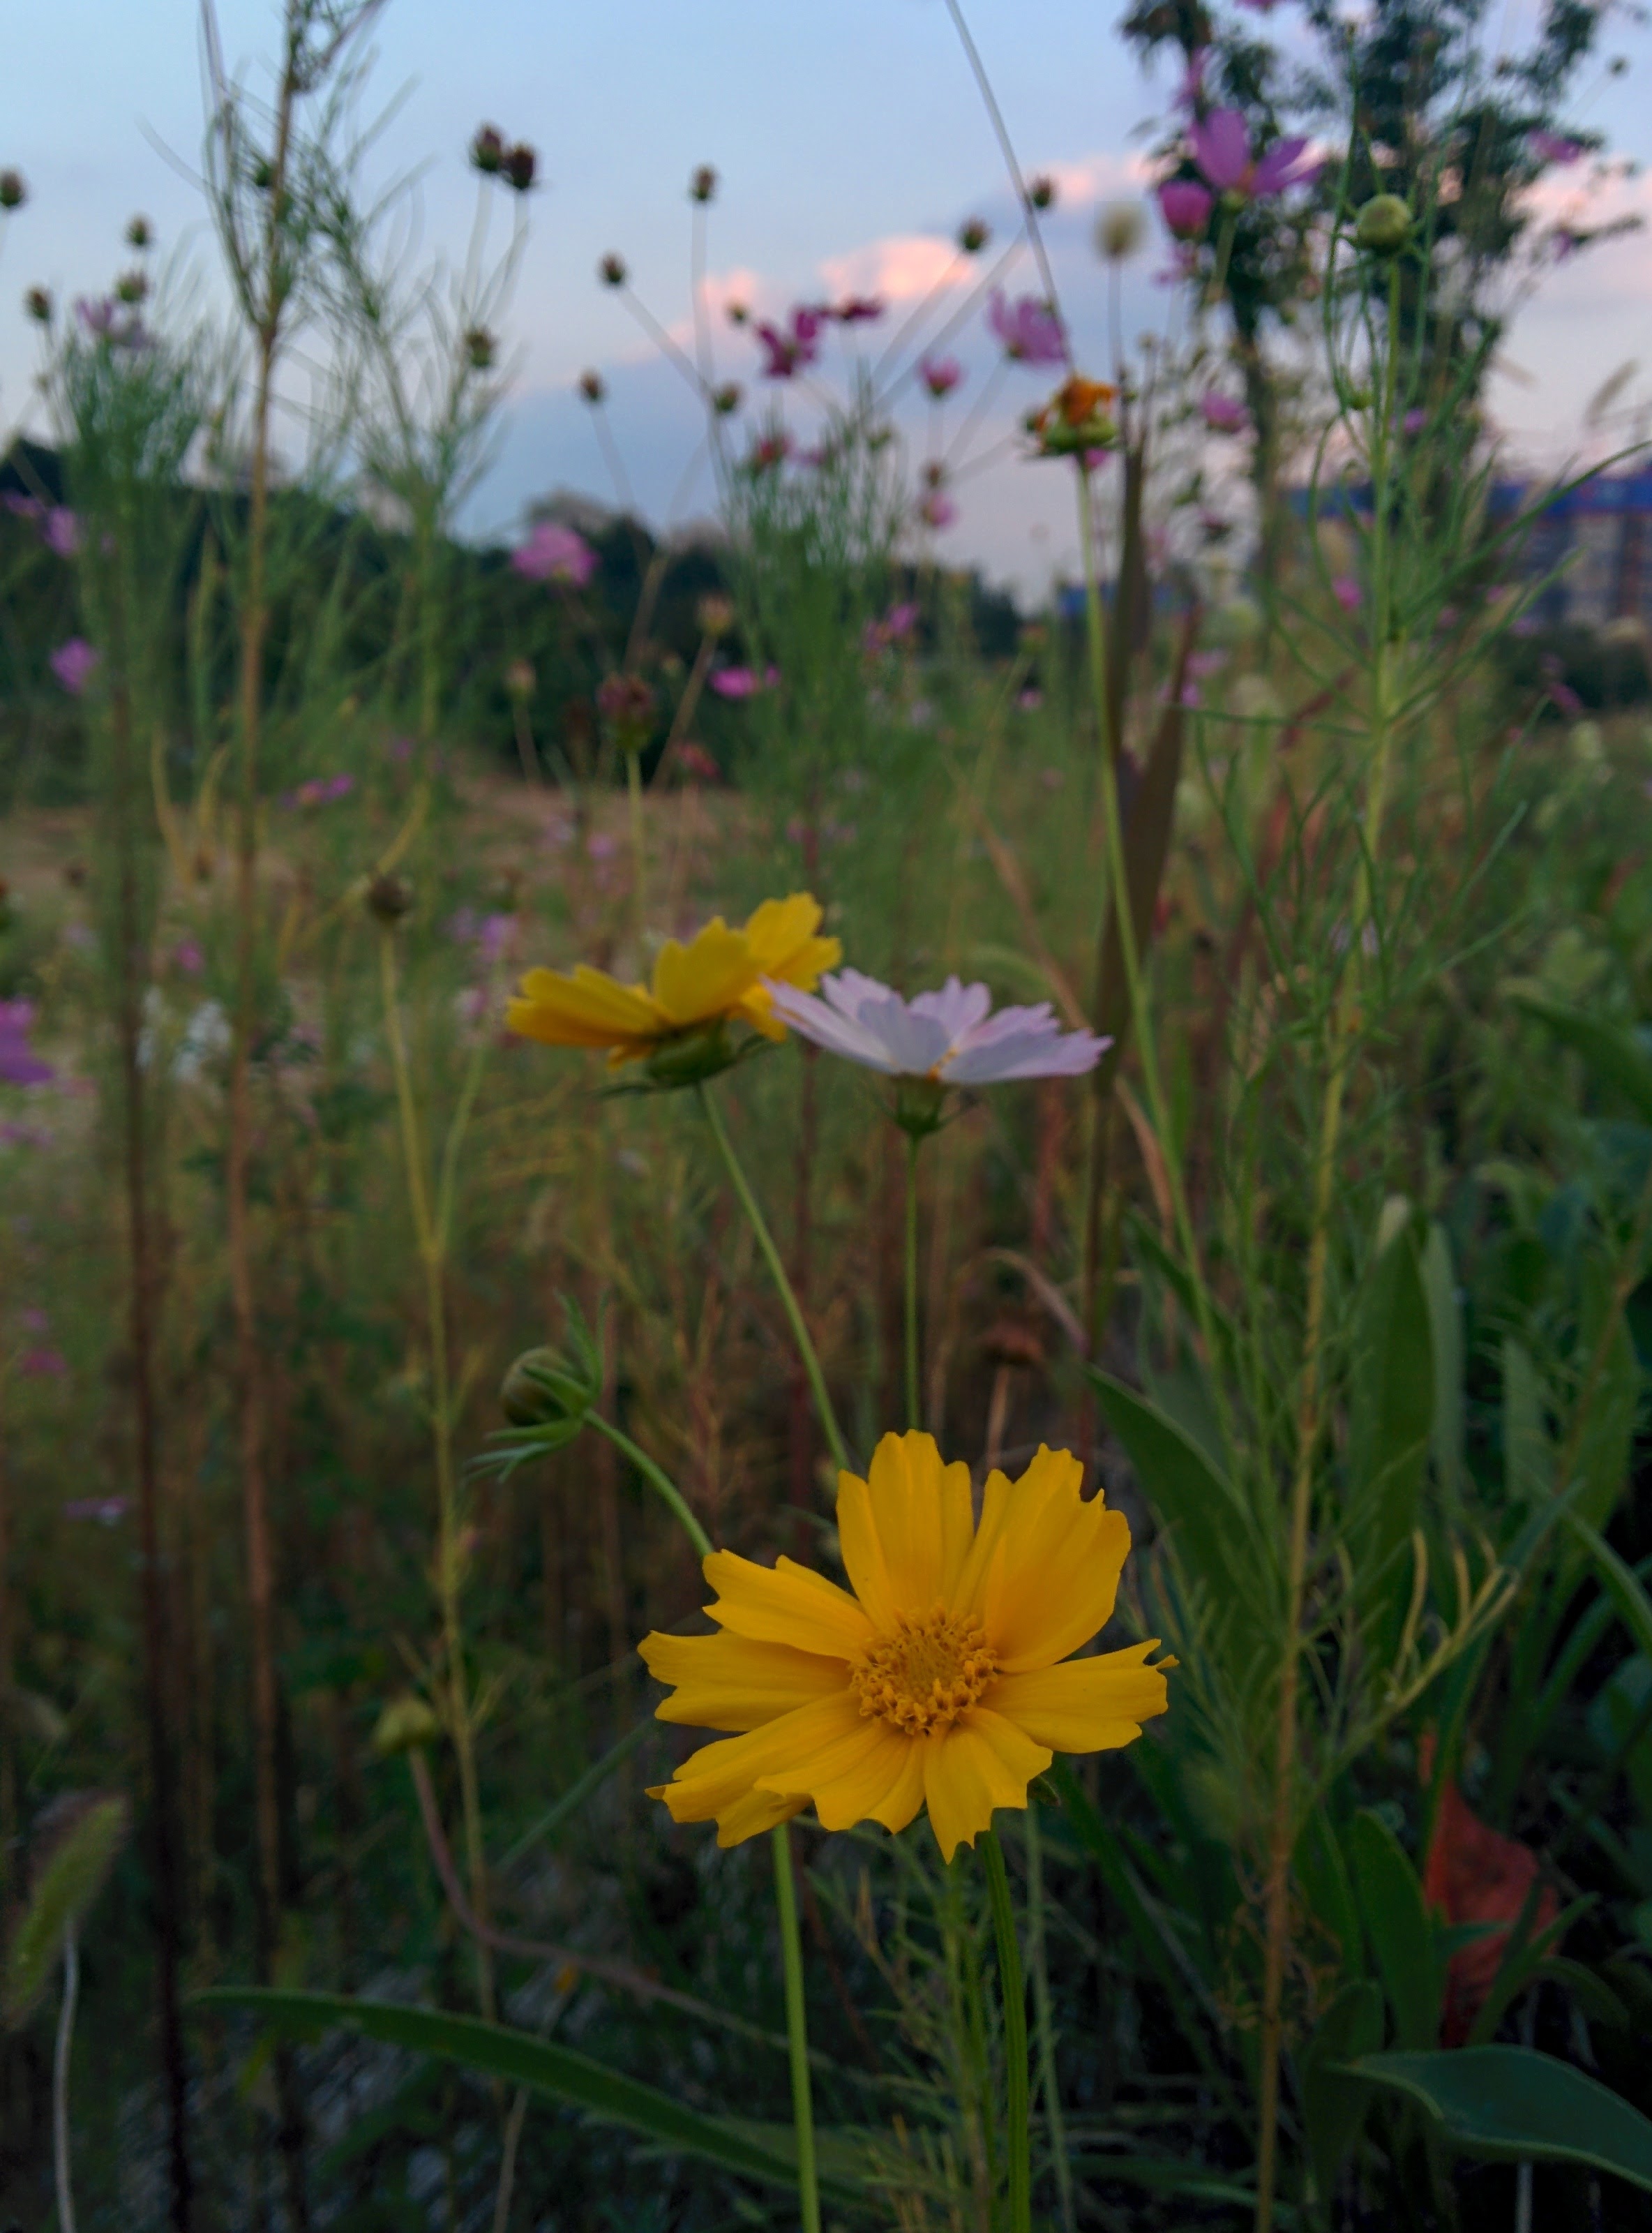 IMG_20150919_181219.jpg 코스모스속에서 외로운 큰금계국 황금색 꽃